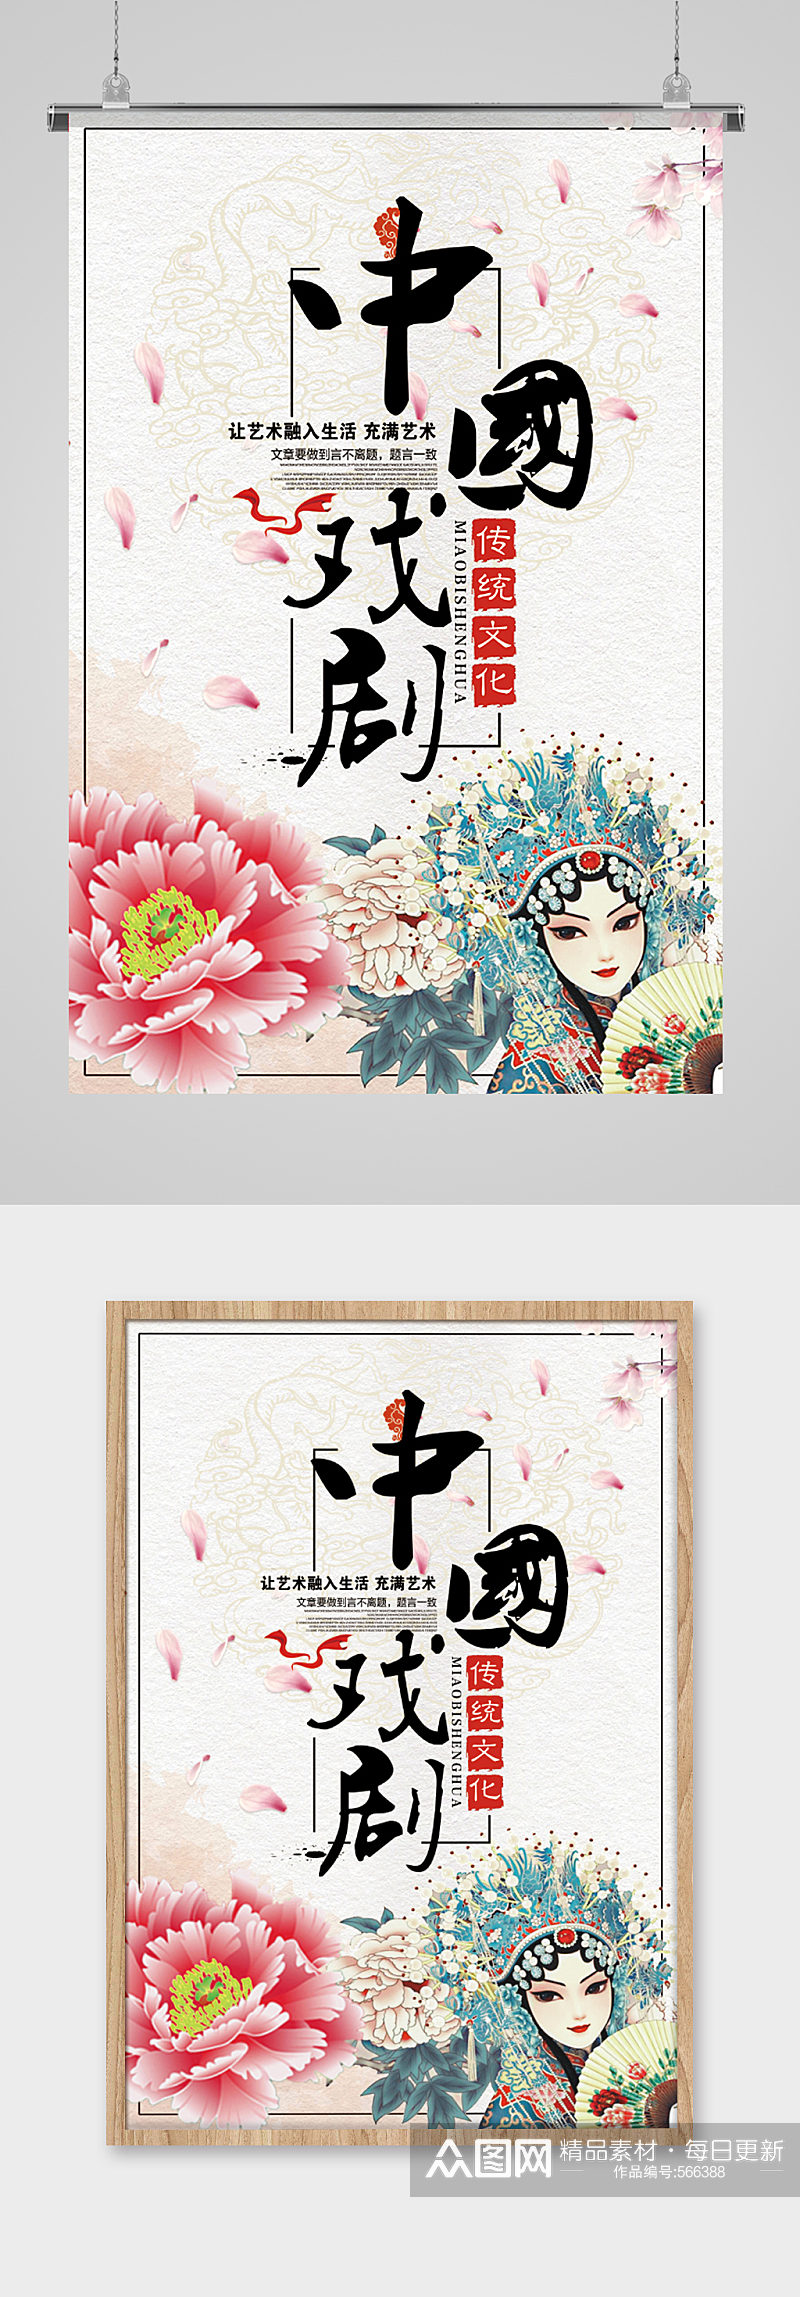 中国戏剧京剧戏曲传统文化宣传海报素材